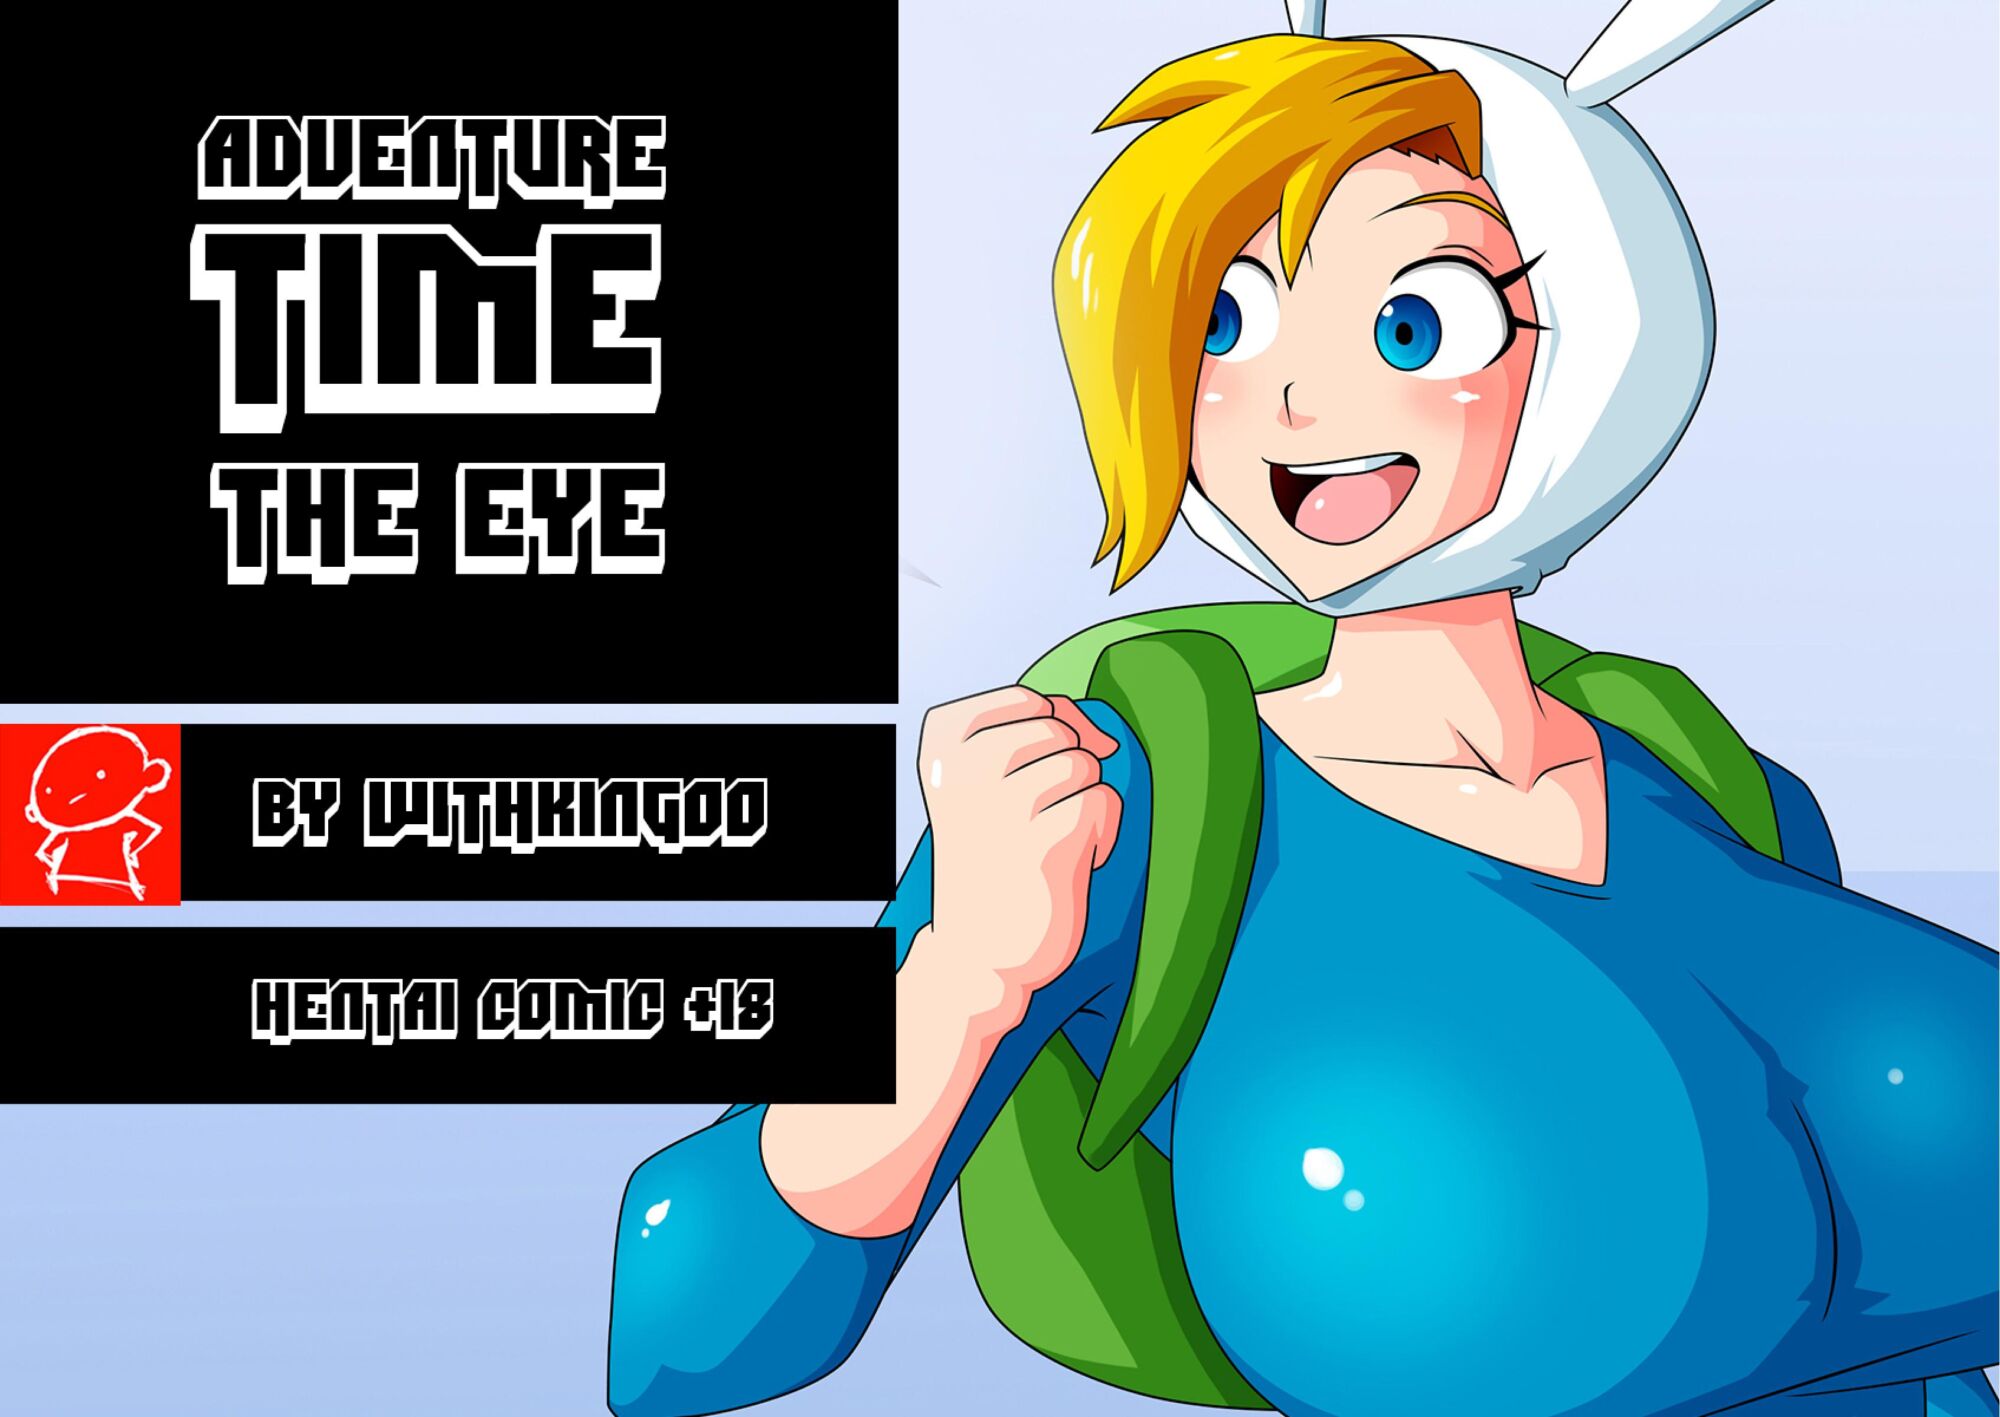 SureFap xxx porno Adventure Time - [Witchking00] - Issue 1 - The Eye